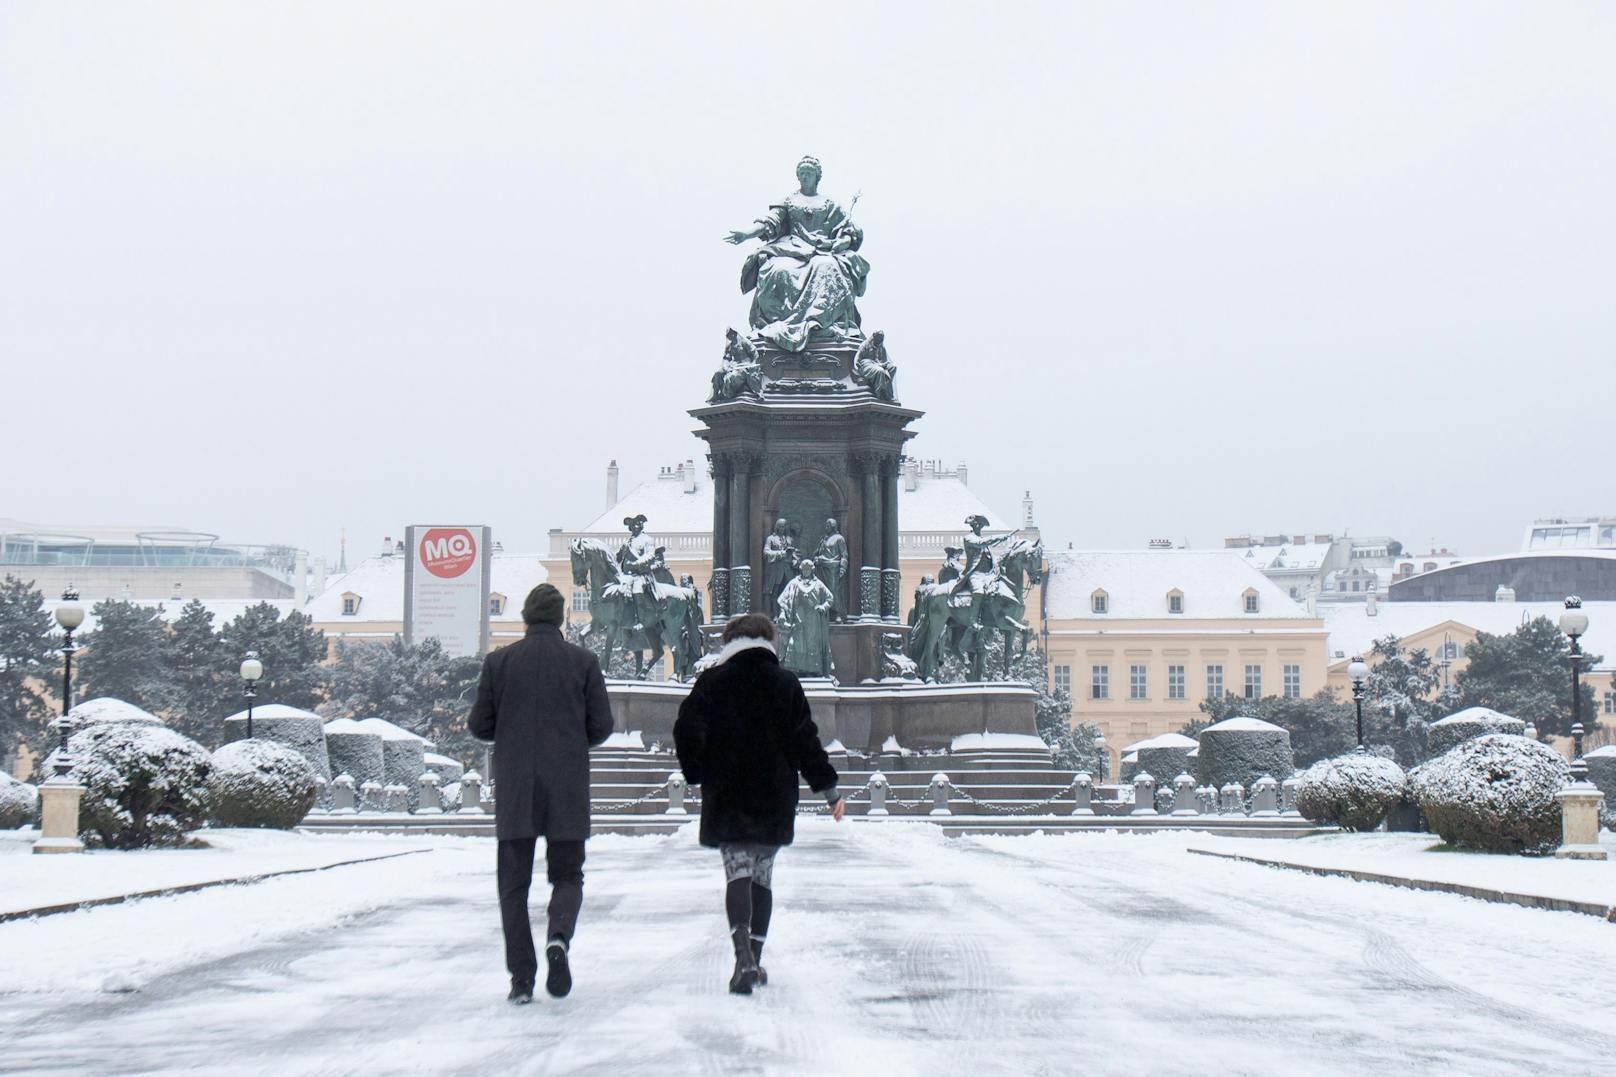 Anfang Dezember 2020 wurde Wien bei Schneefällen angezuckert. Sehen wir dieses Bild bald wieder?